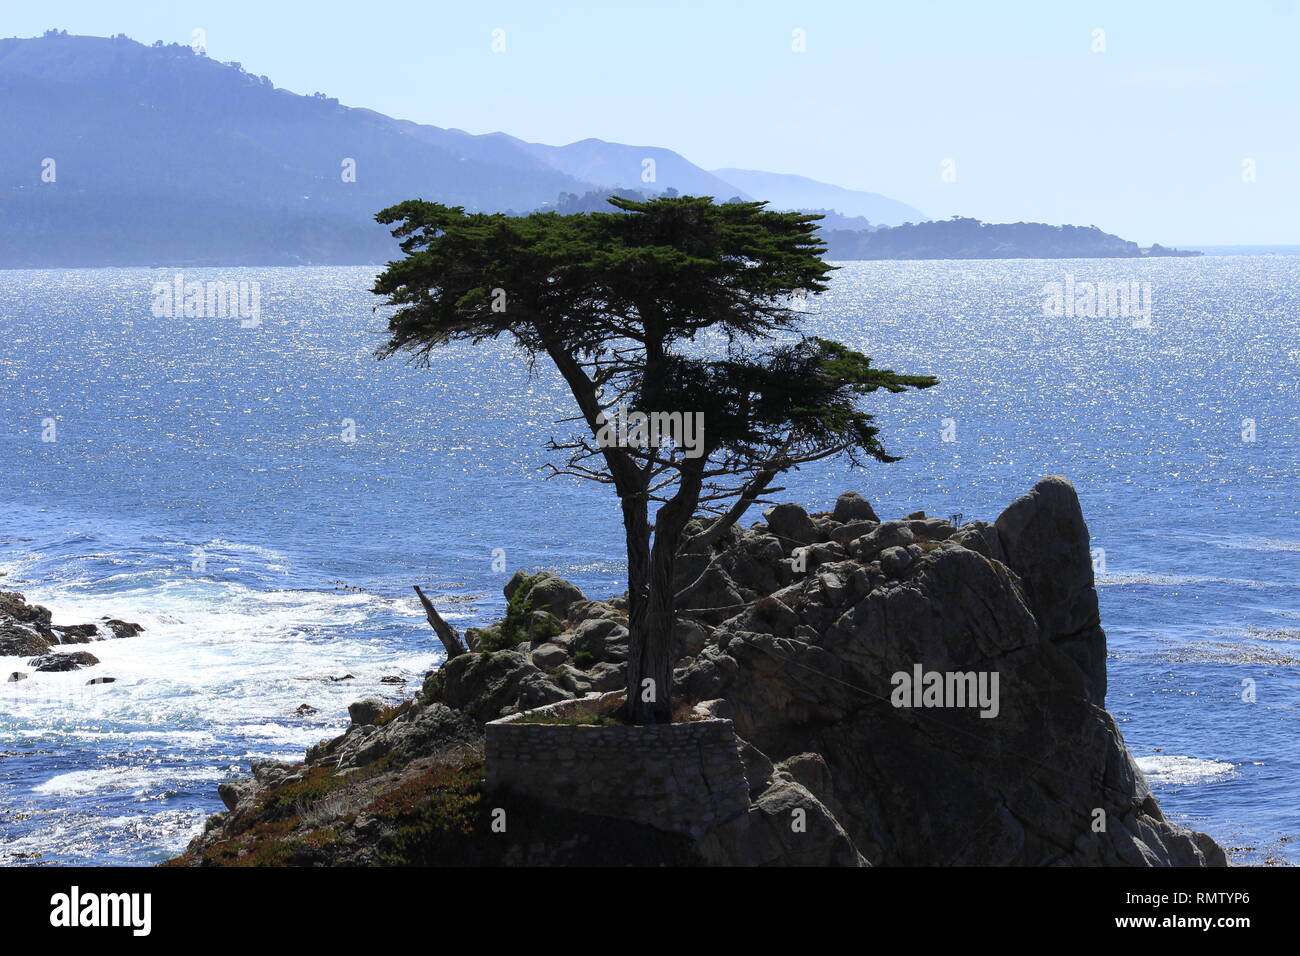 Ein Baum auf einem Felsen im Hintergrund das Meer bei strahlendem Sonnenschein Stock Photo